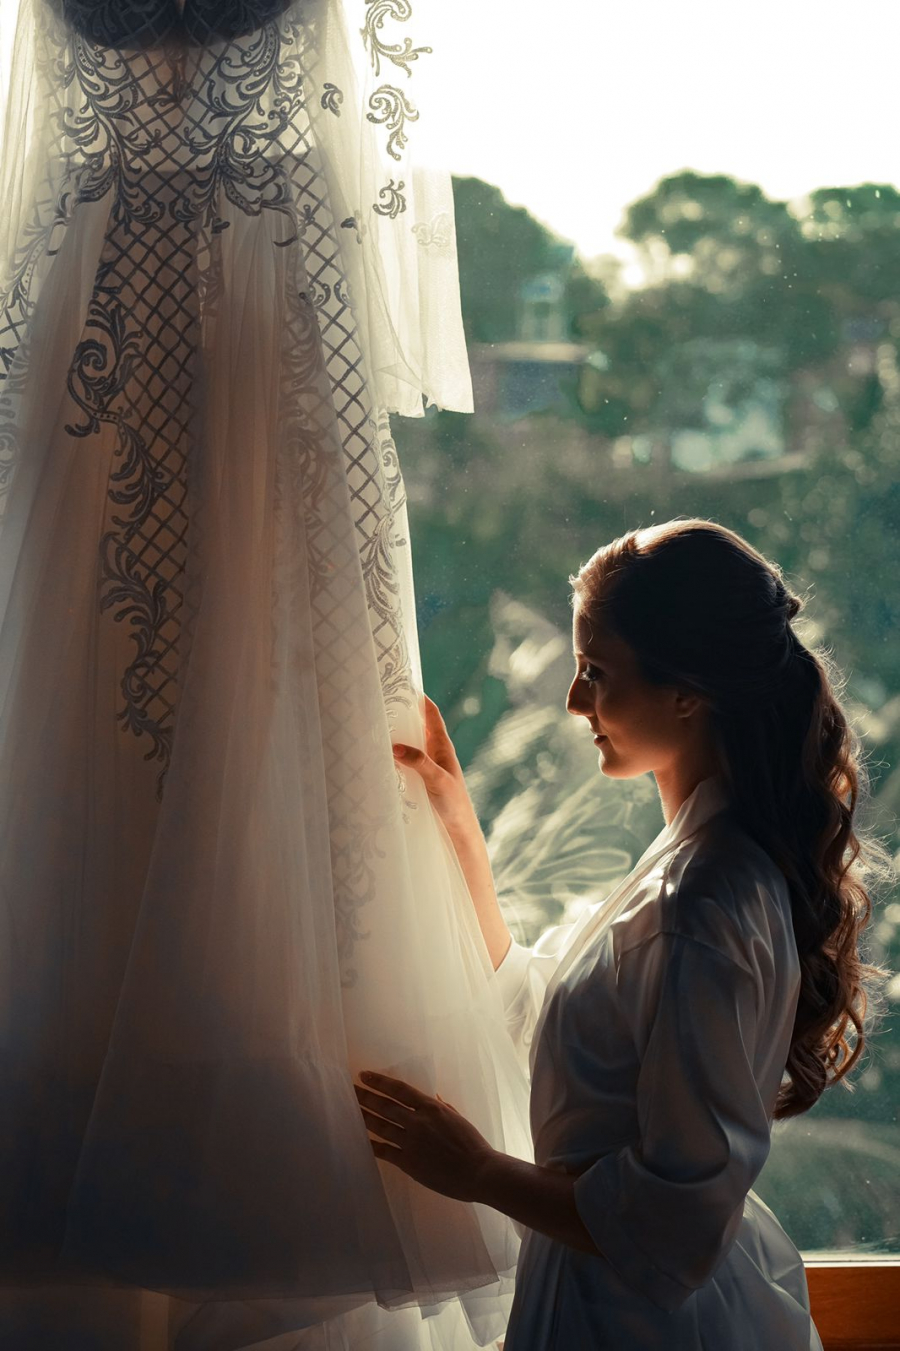 Casar Noronha: Destination Wedding em uma paisagem deslumbrante!